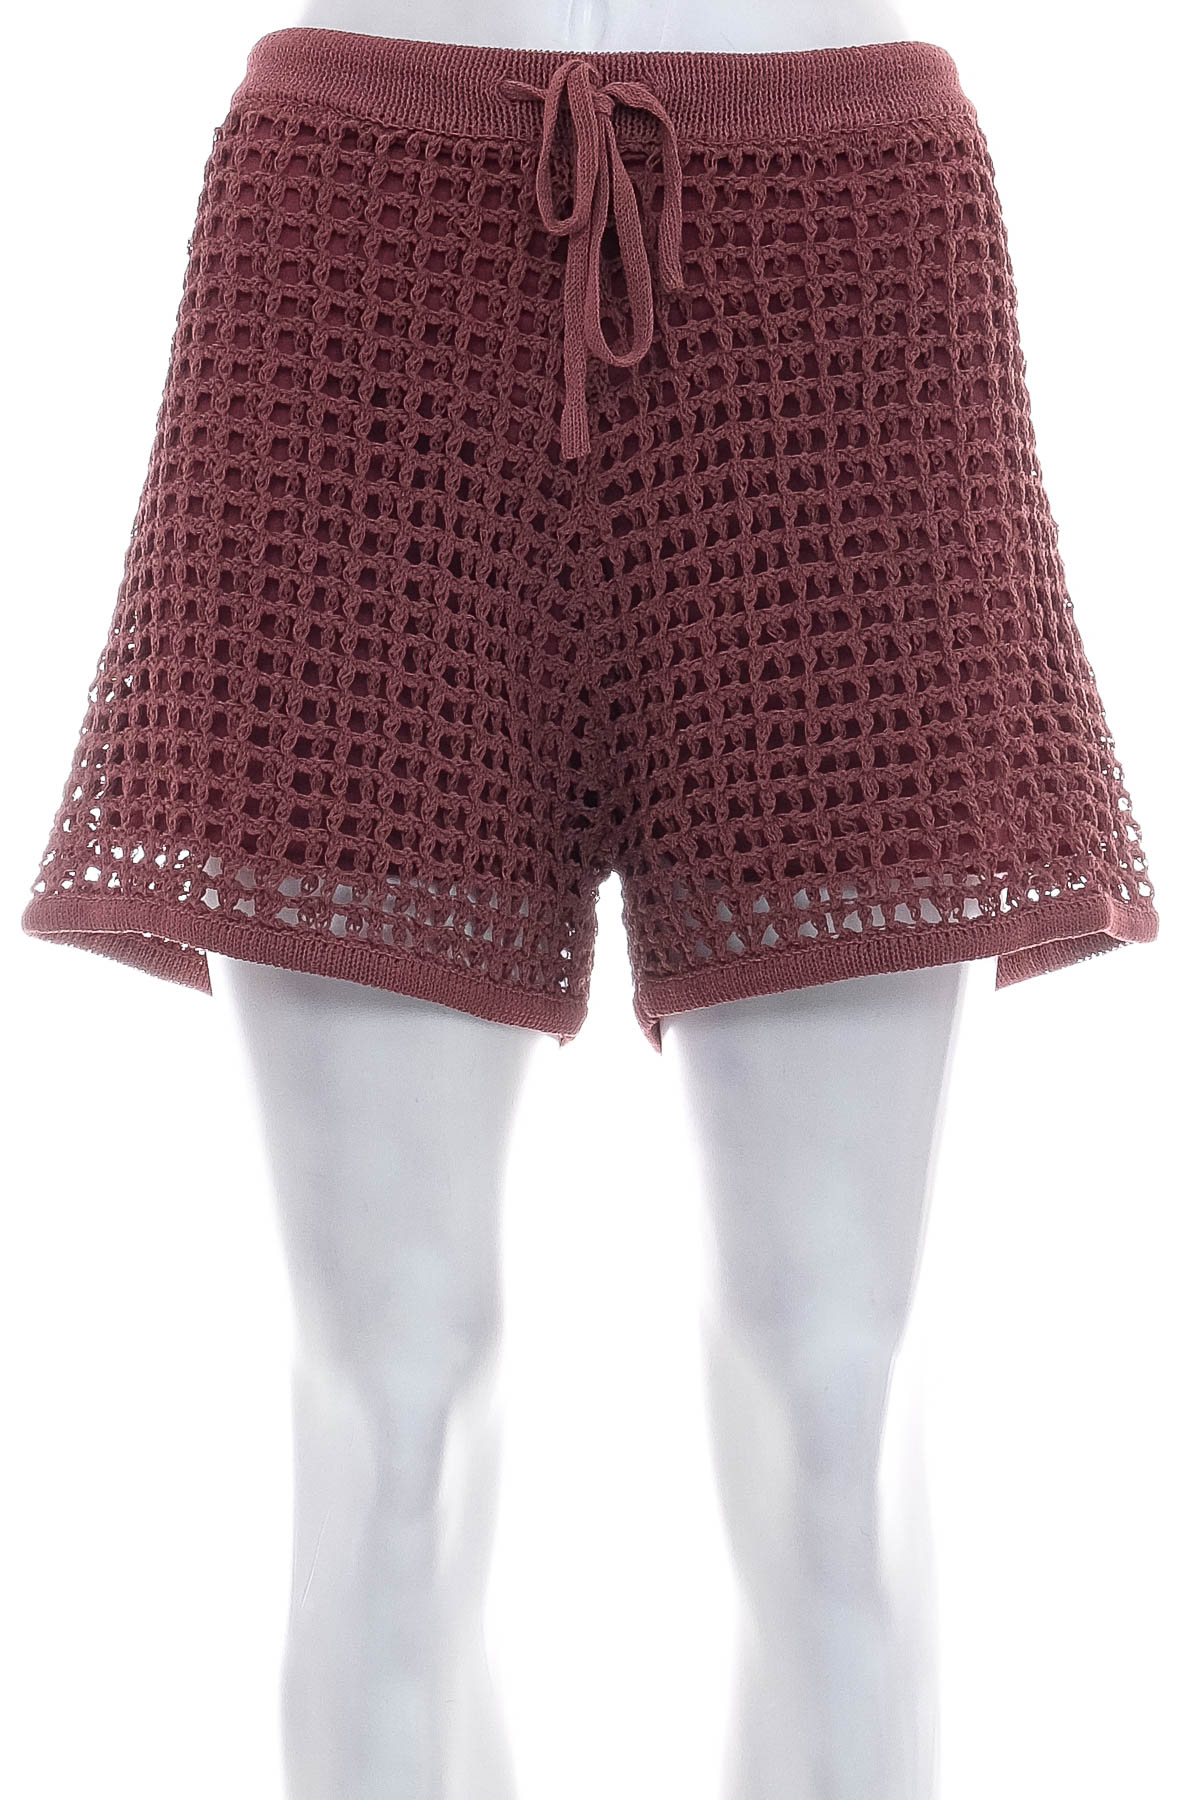 Female shorts - ZARA - 0